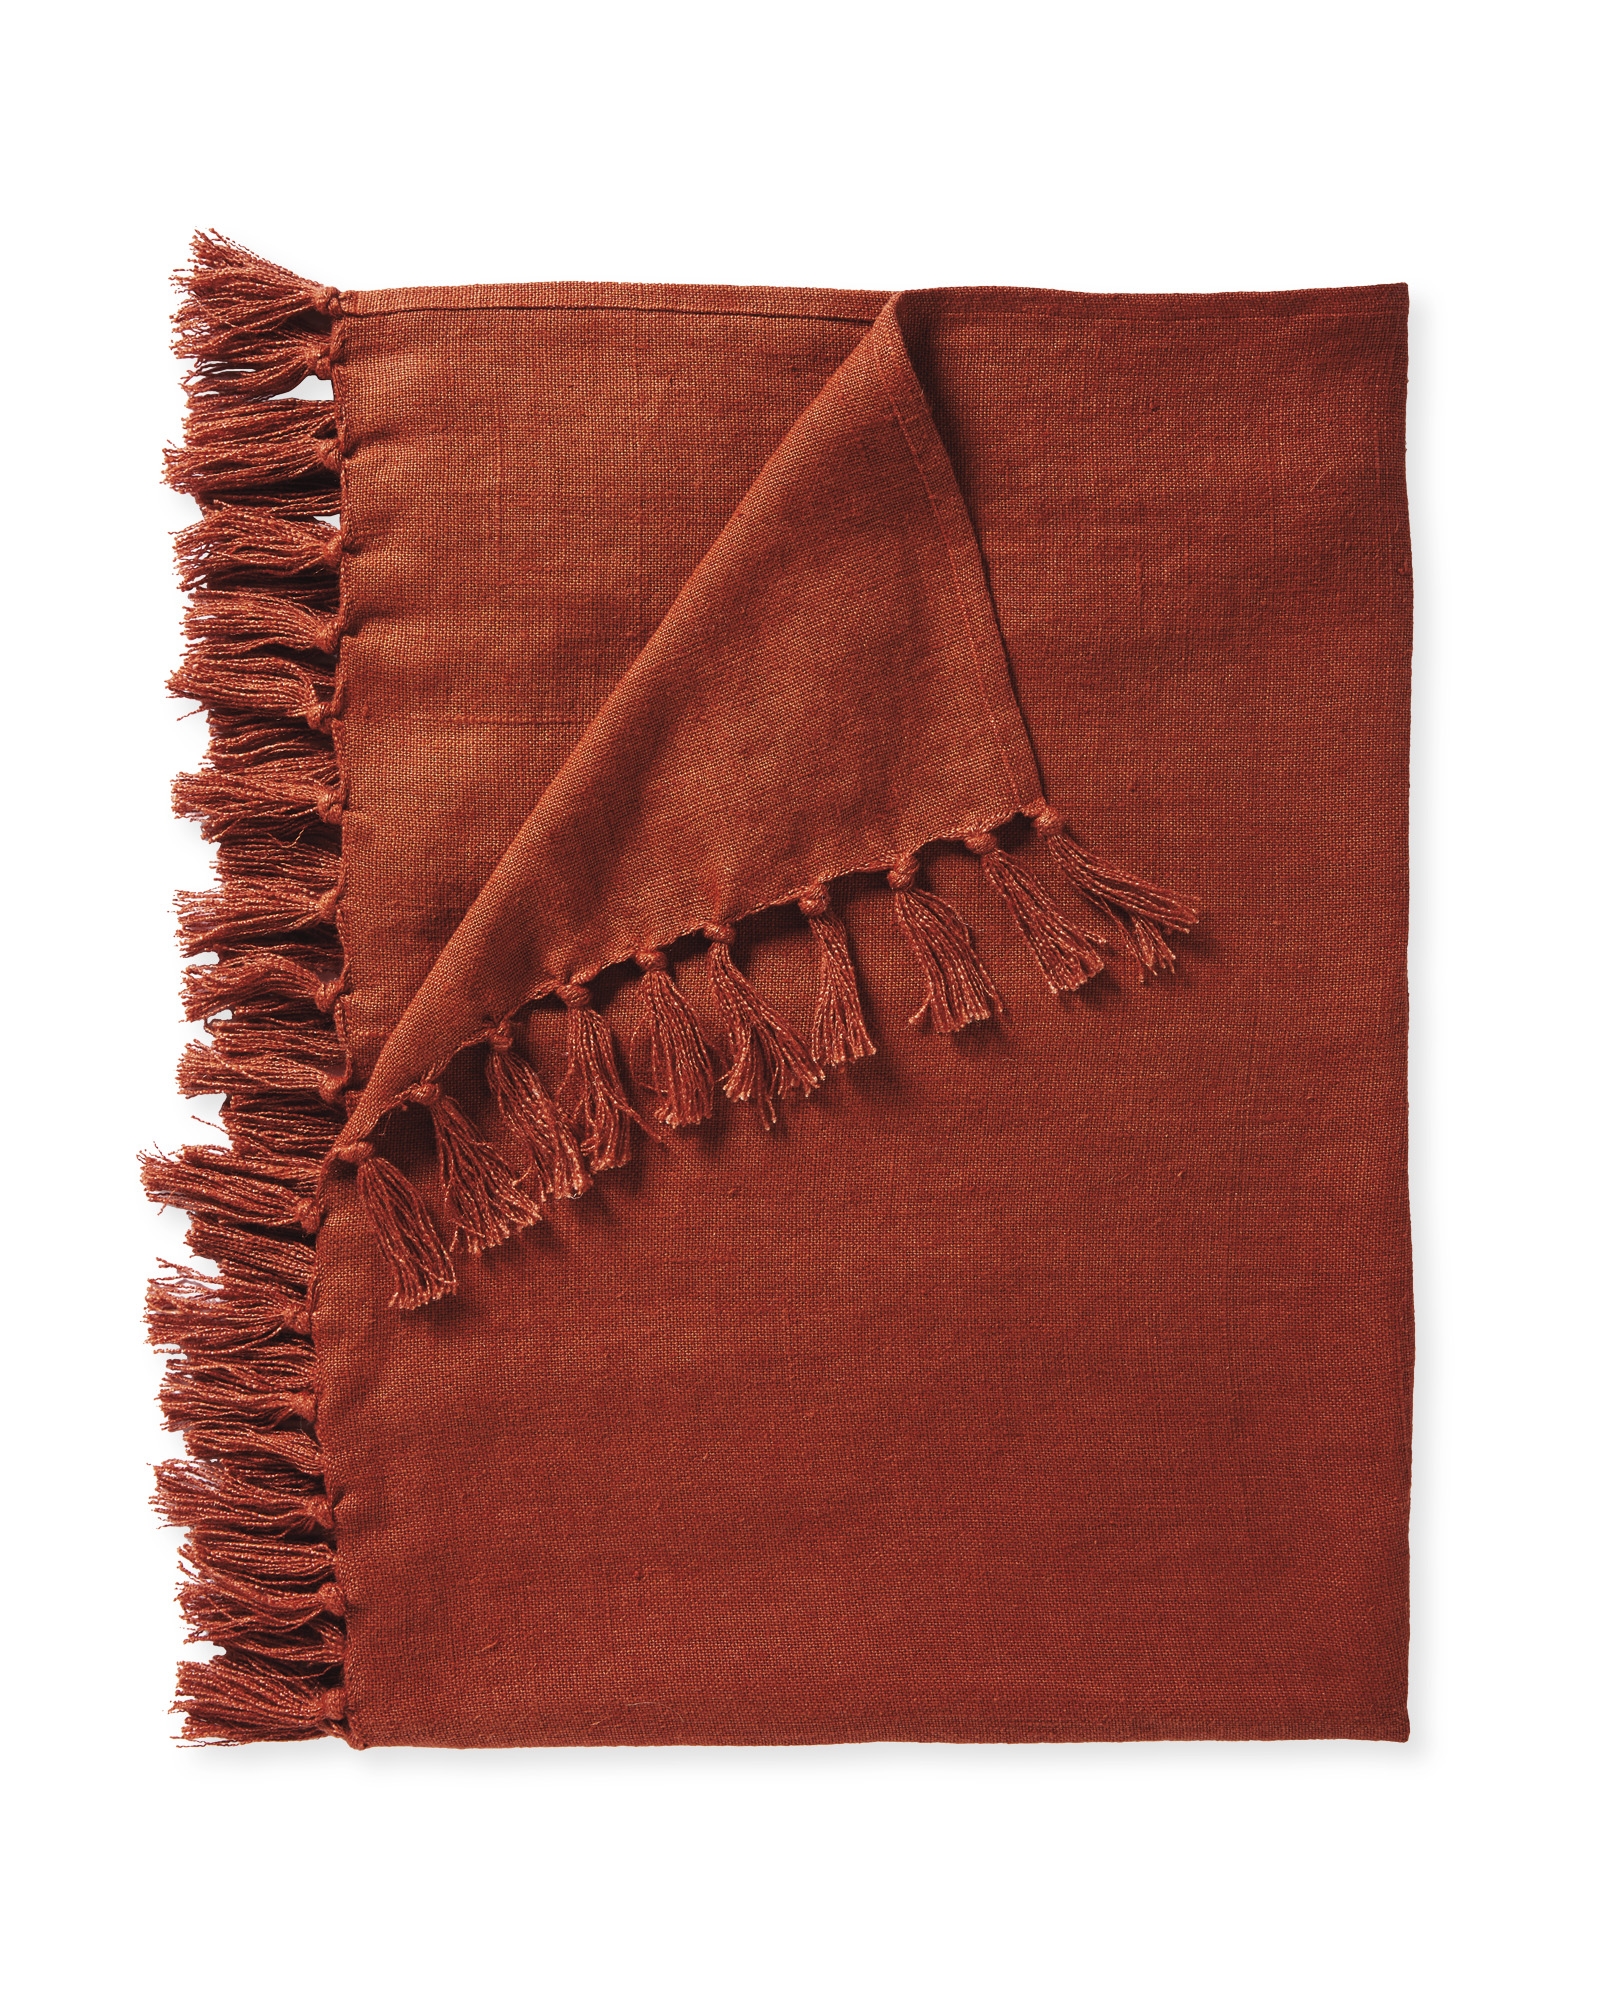 Mendocino Linen Throw - Terracotta - Image 1